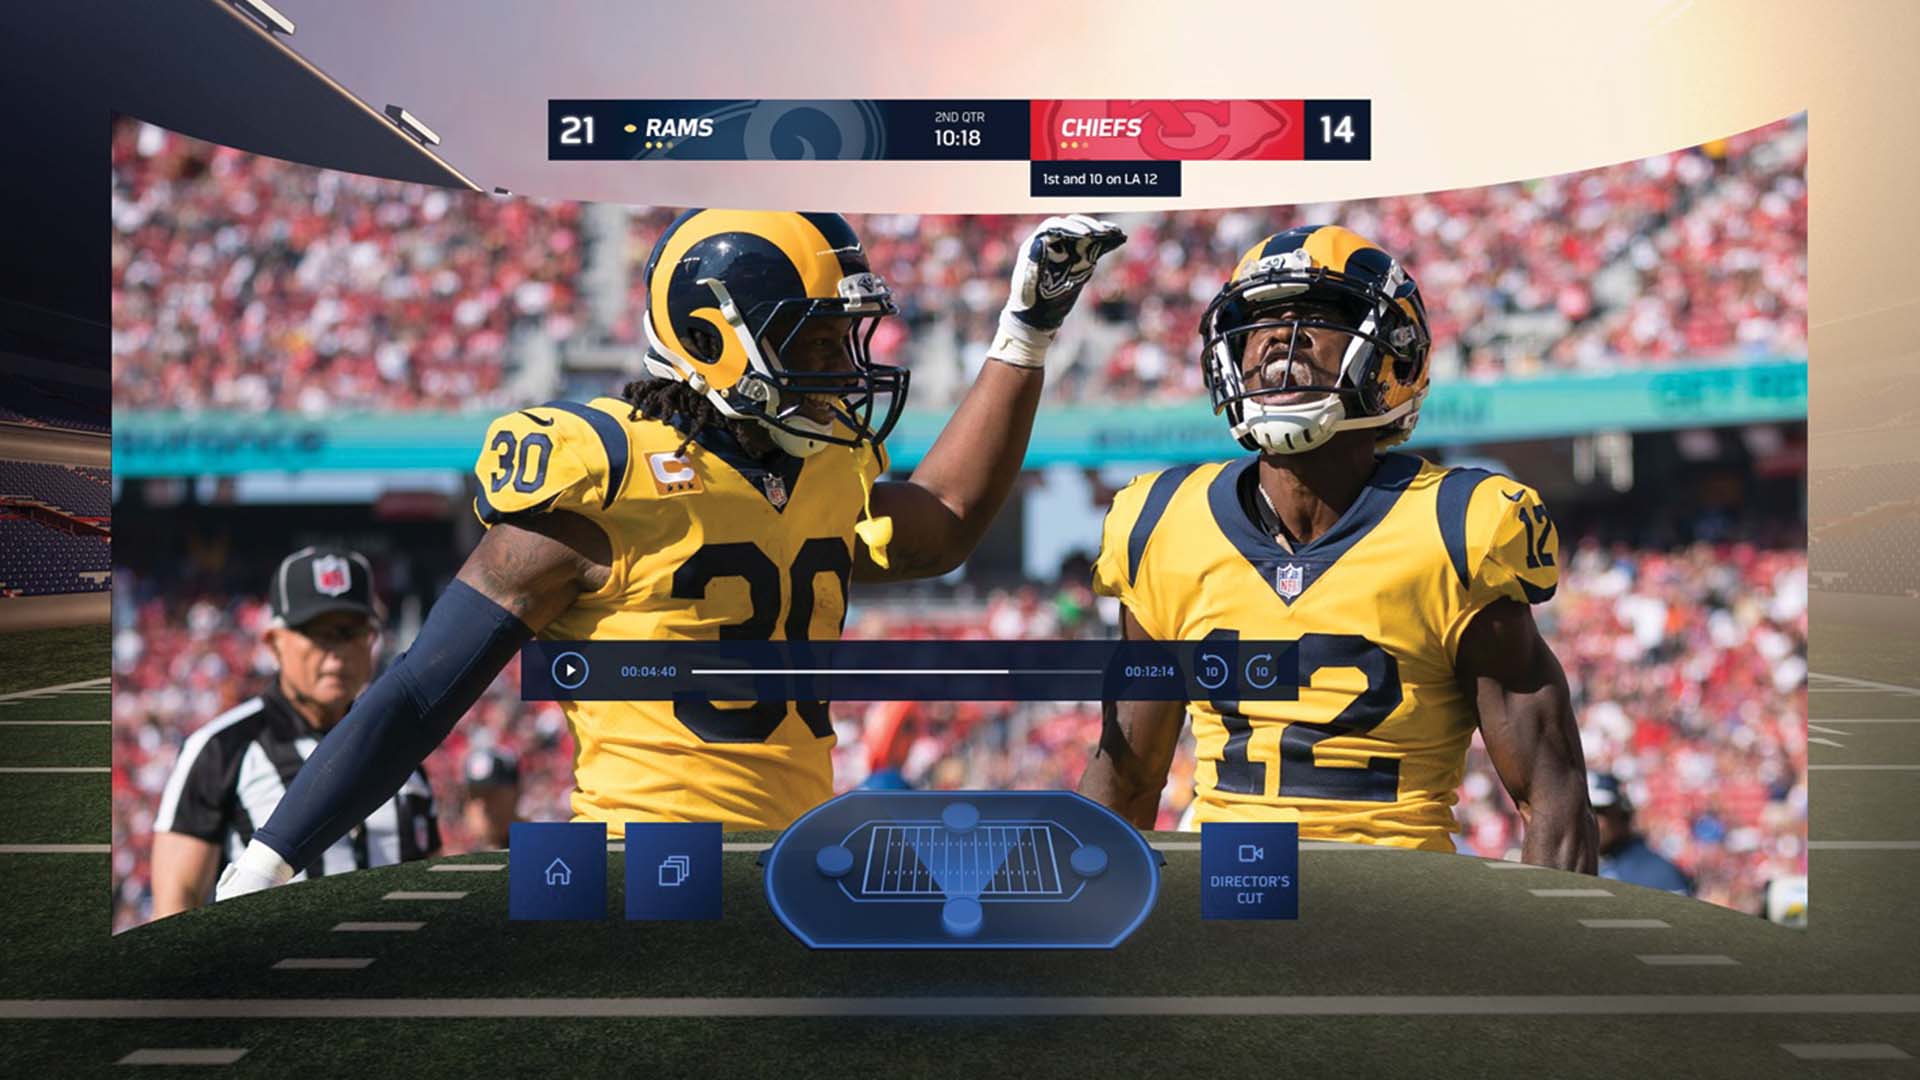 NFL Game from Oculus GO VR System; Photo Credit: VR Explorer